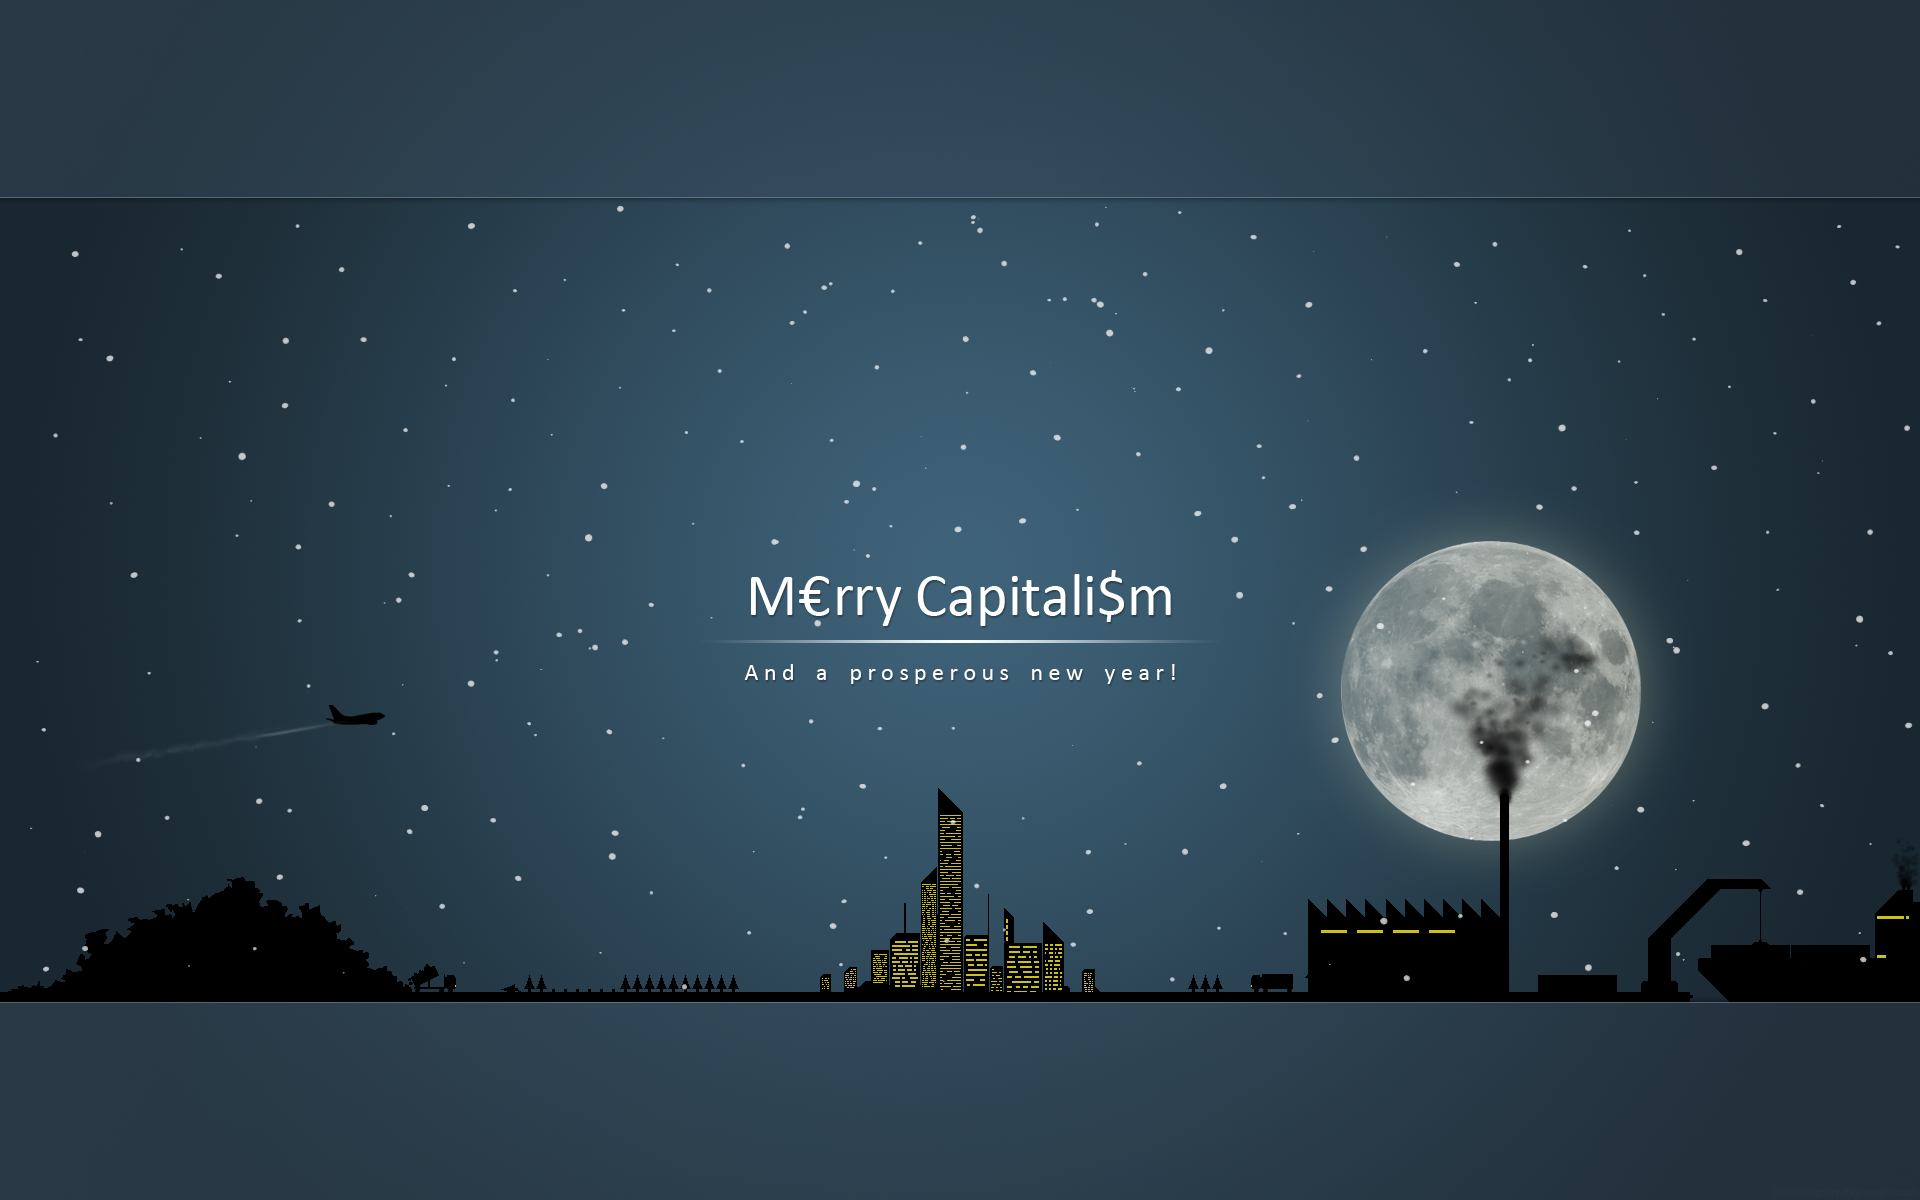 Merry Capitalism